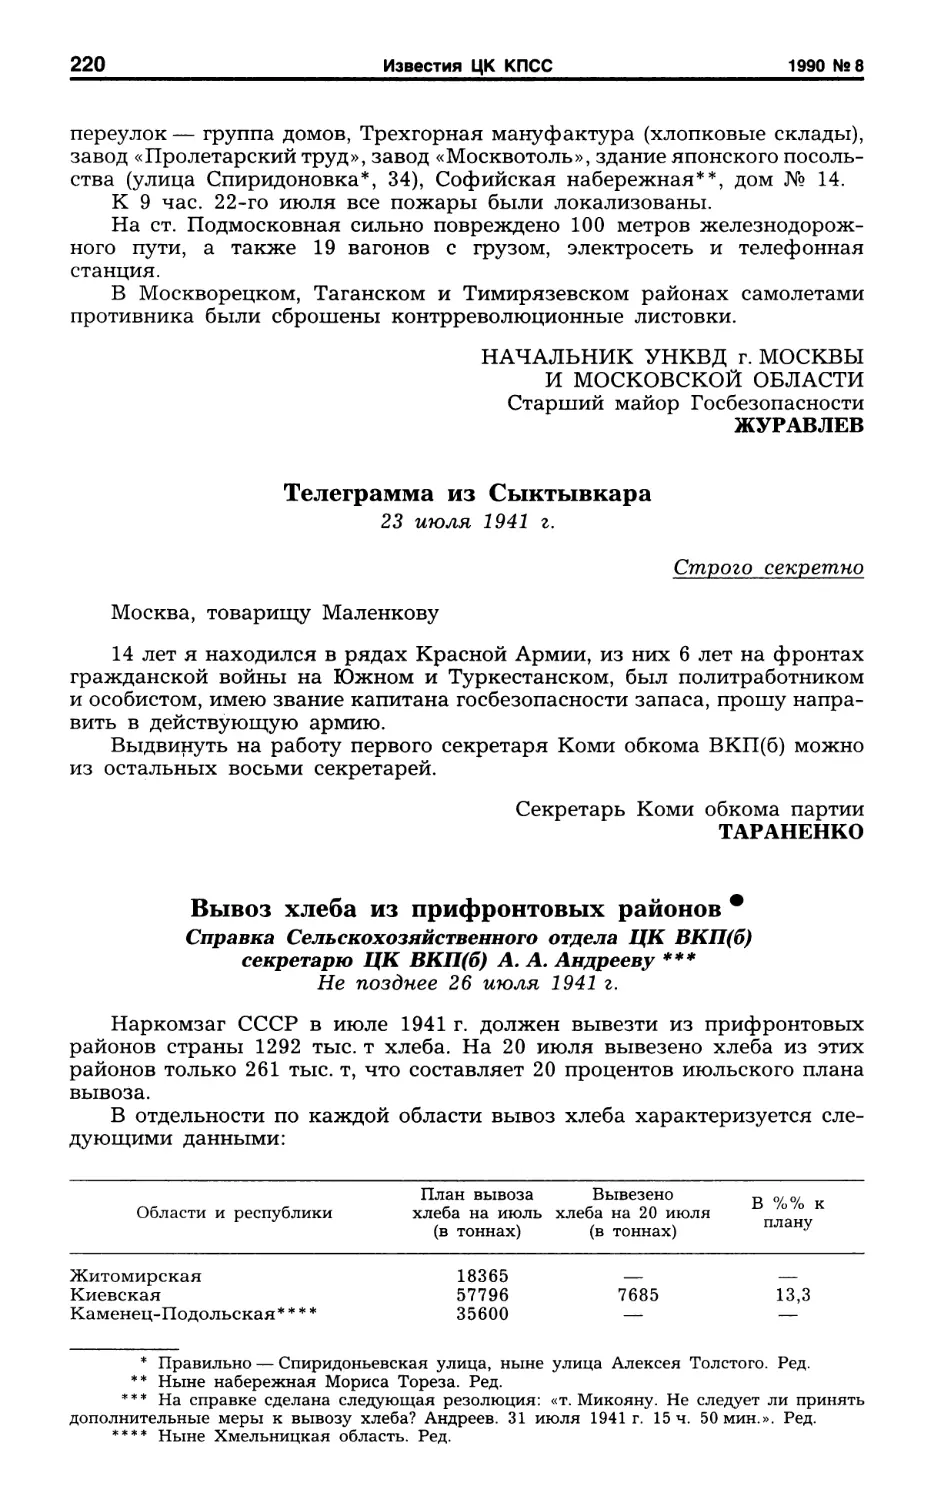 Телеграмма из Сыктывкара. 23 июля 1941 г